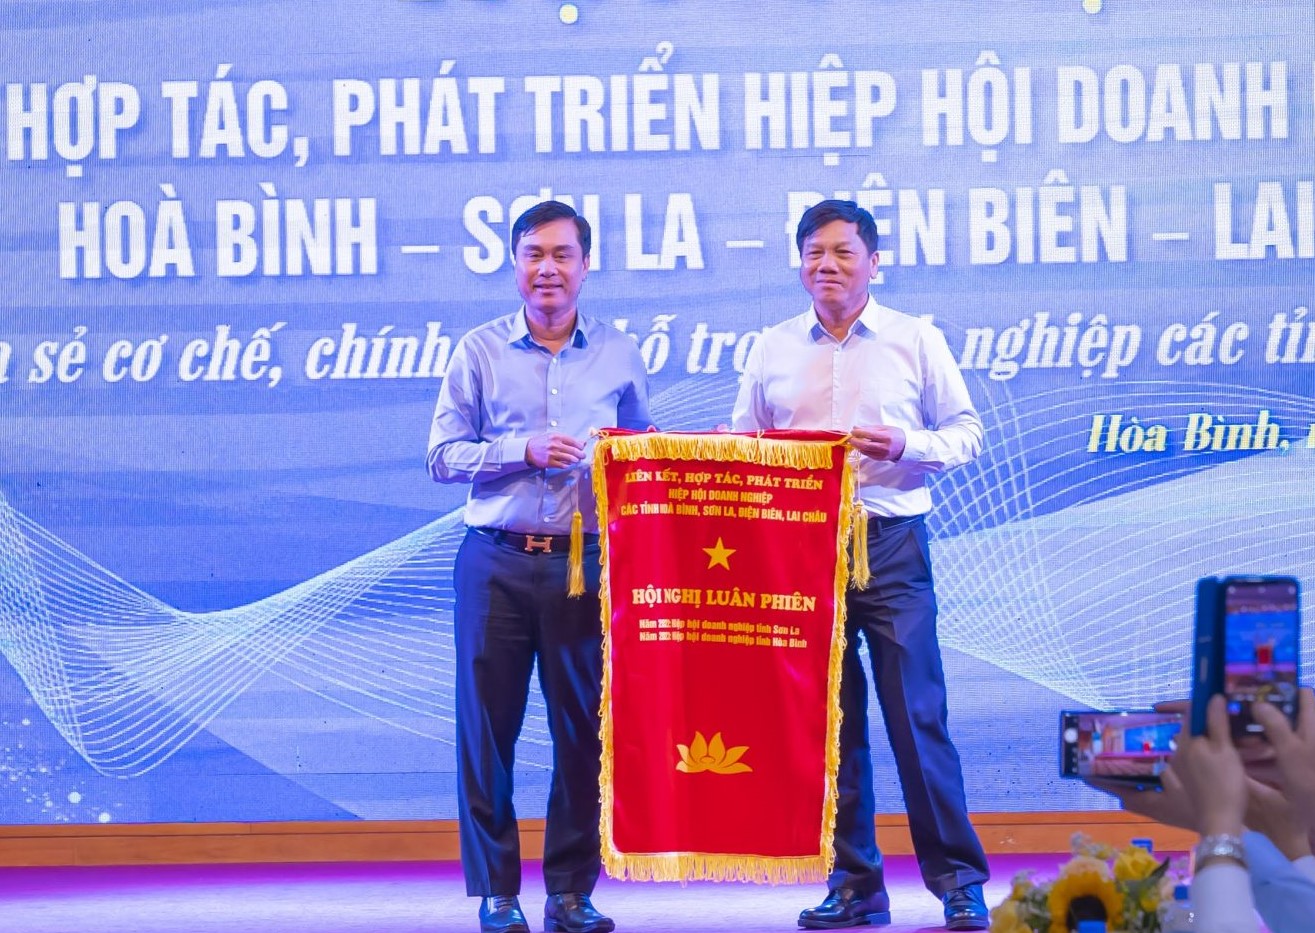 Hiệp hội Doanh nghiệp tỉnh Hòa Bình trao cờ luân phiên cho Hiệp hội Doanh nghiệp tỉnh Điện Biên đăng cai tổ chức Hội nghị năm 2024